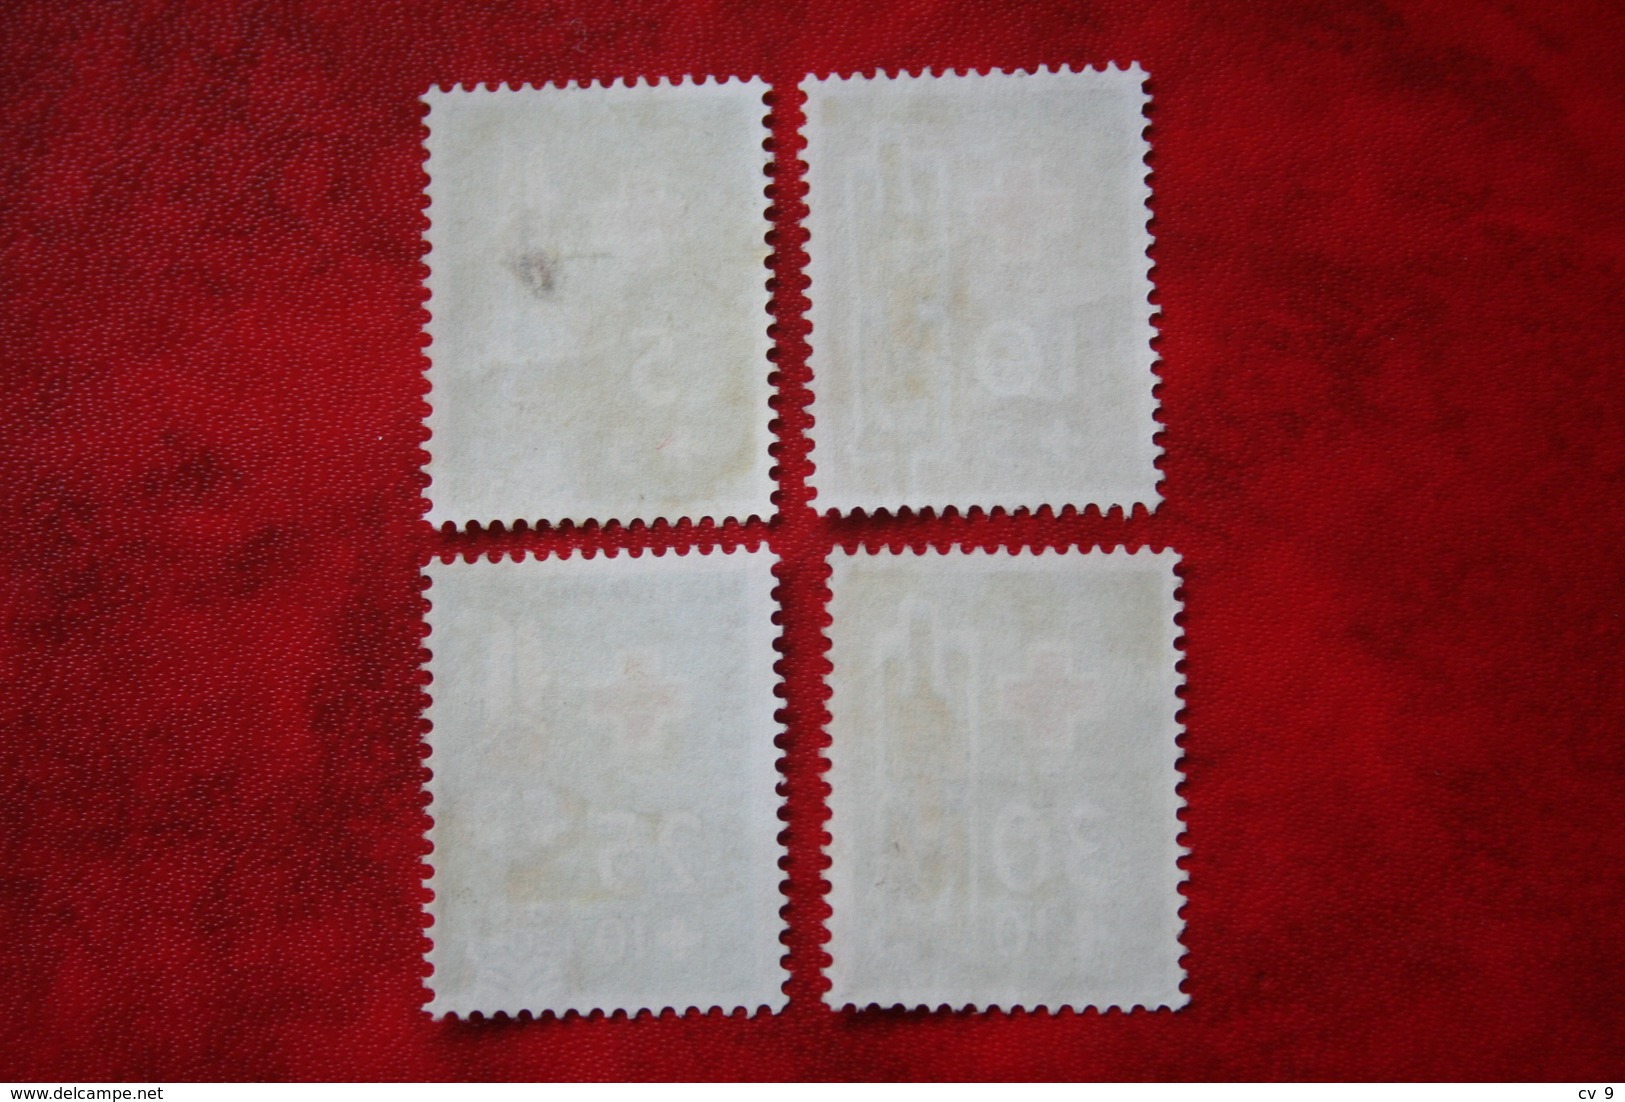 Rode Kruiszegels ; NVPH 49-52; 1958 MH / Ongebruikt NIEUW GUINEA / NIEDERLANDISCH NEUGUINEA / NETHERLANDS NEW GUINEA - Niederländisch-Neuguinea